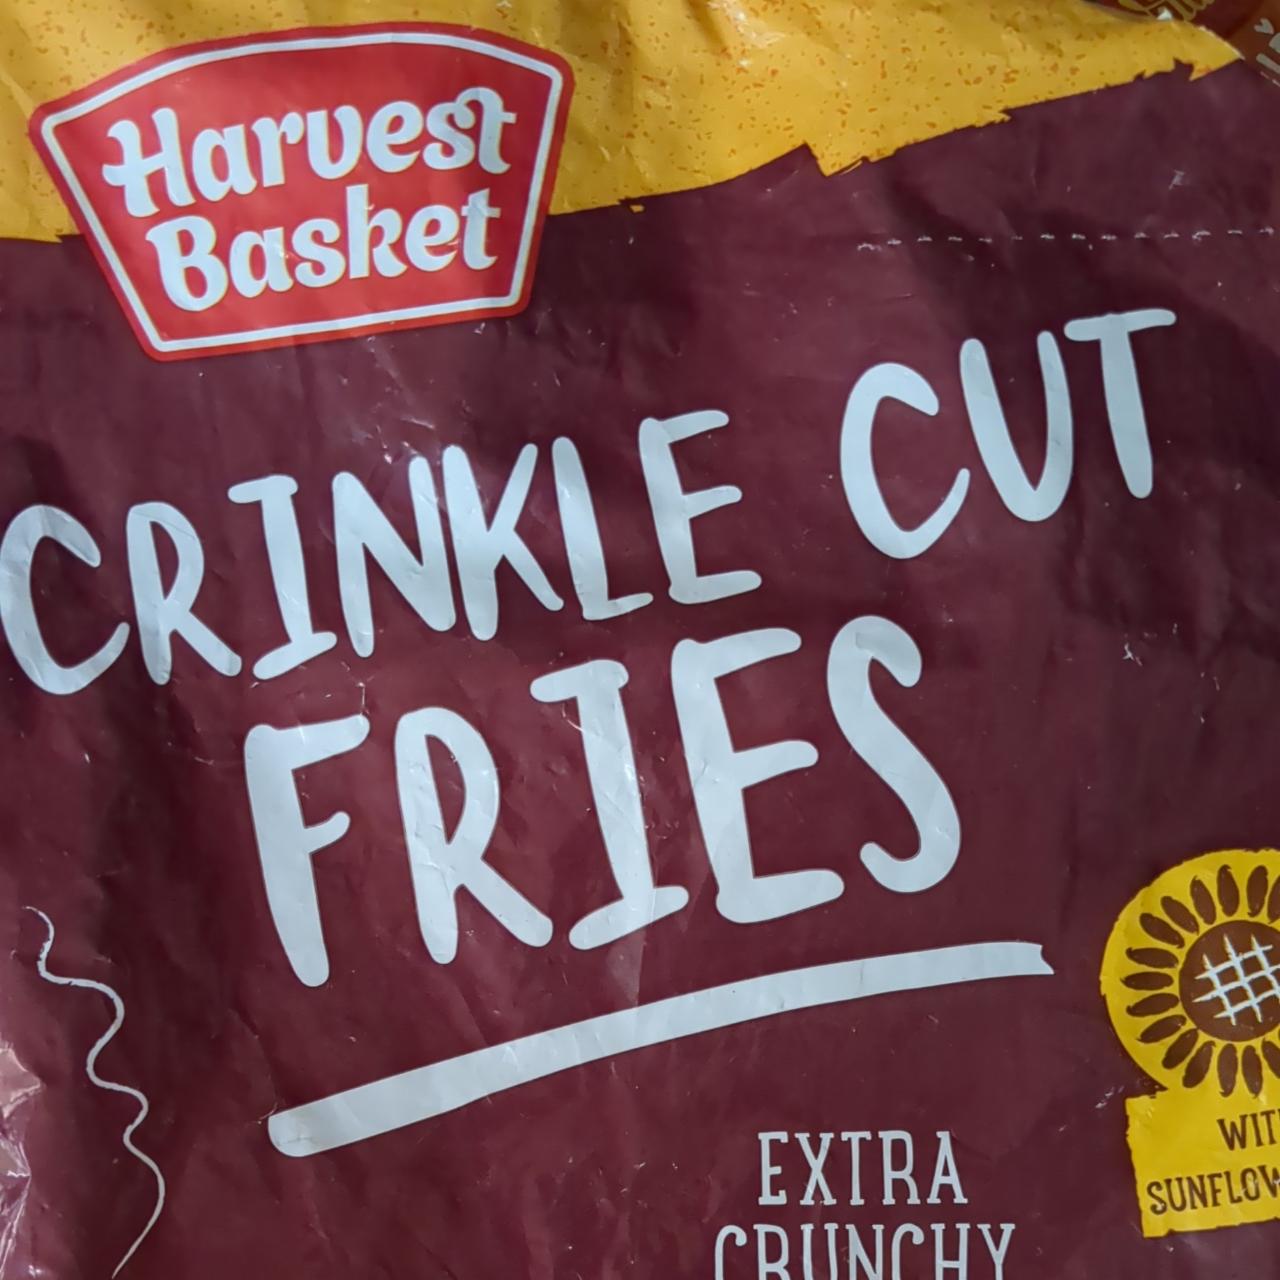 Фото - Crinkle cut fries Harvest Basket